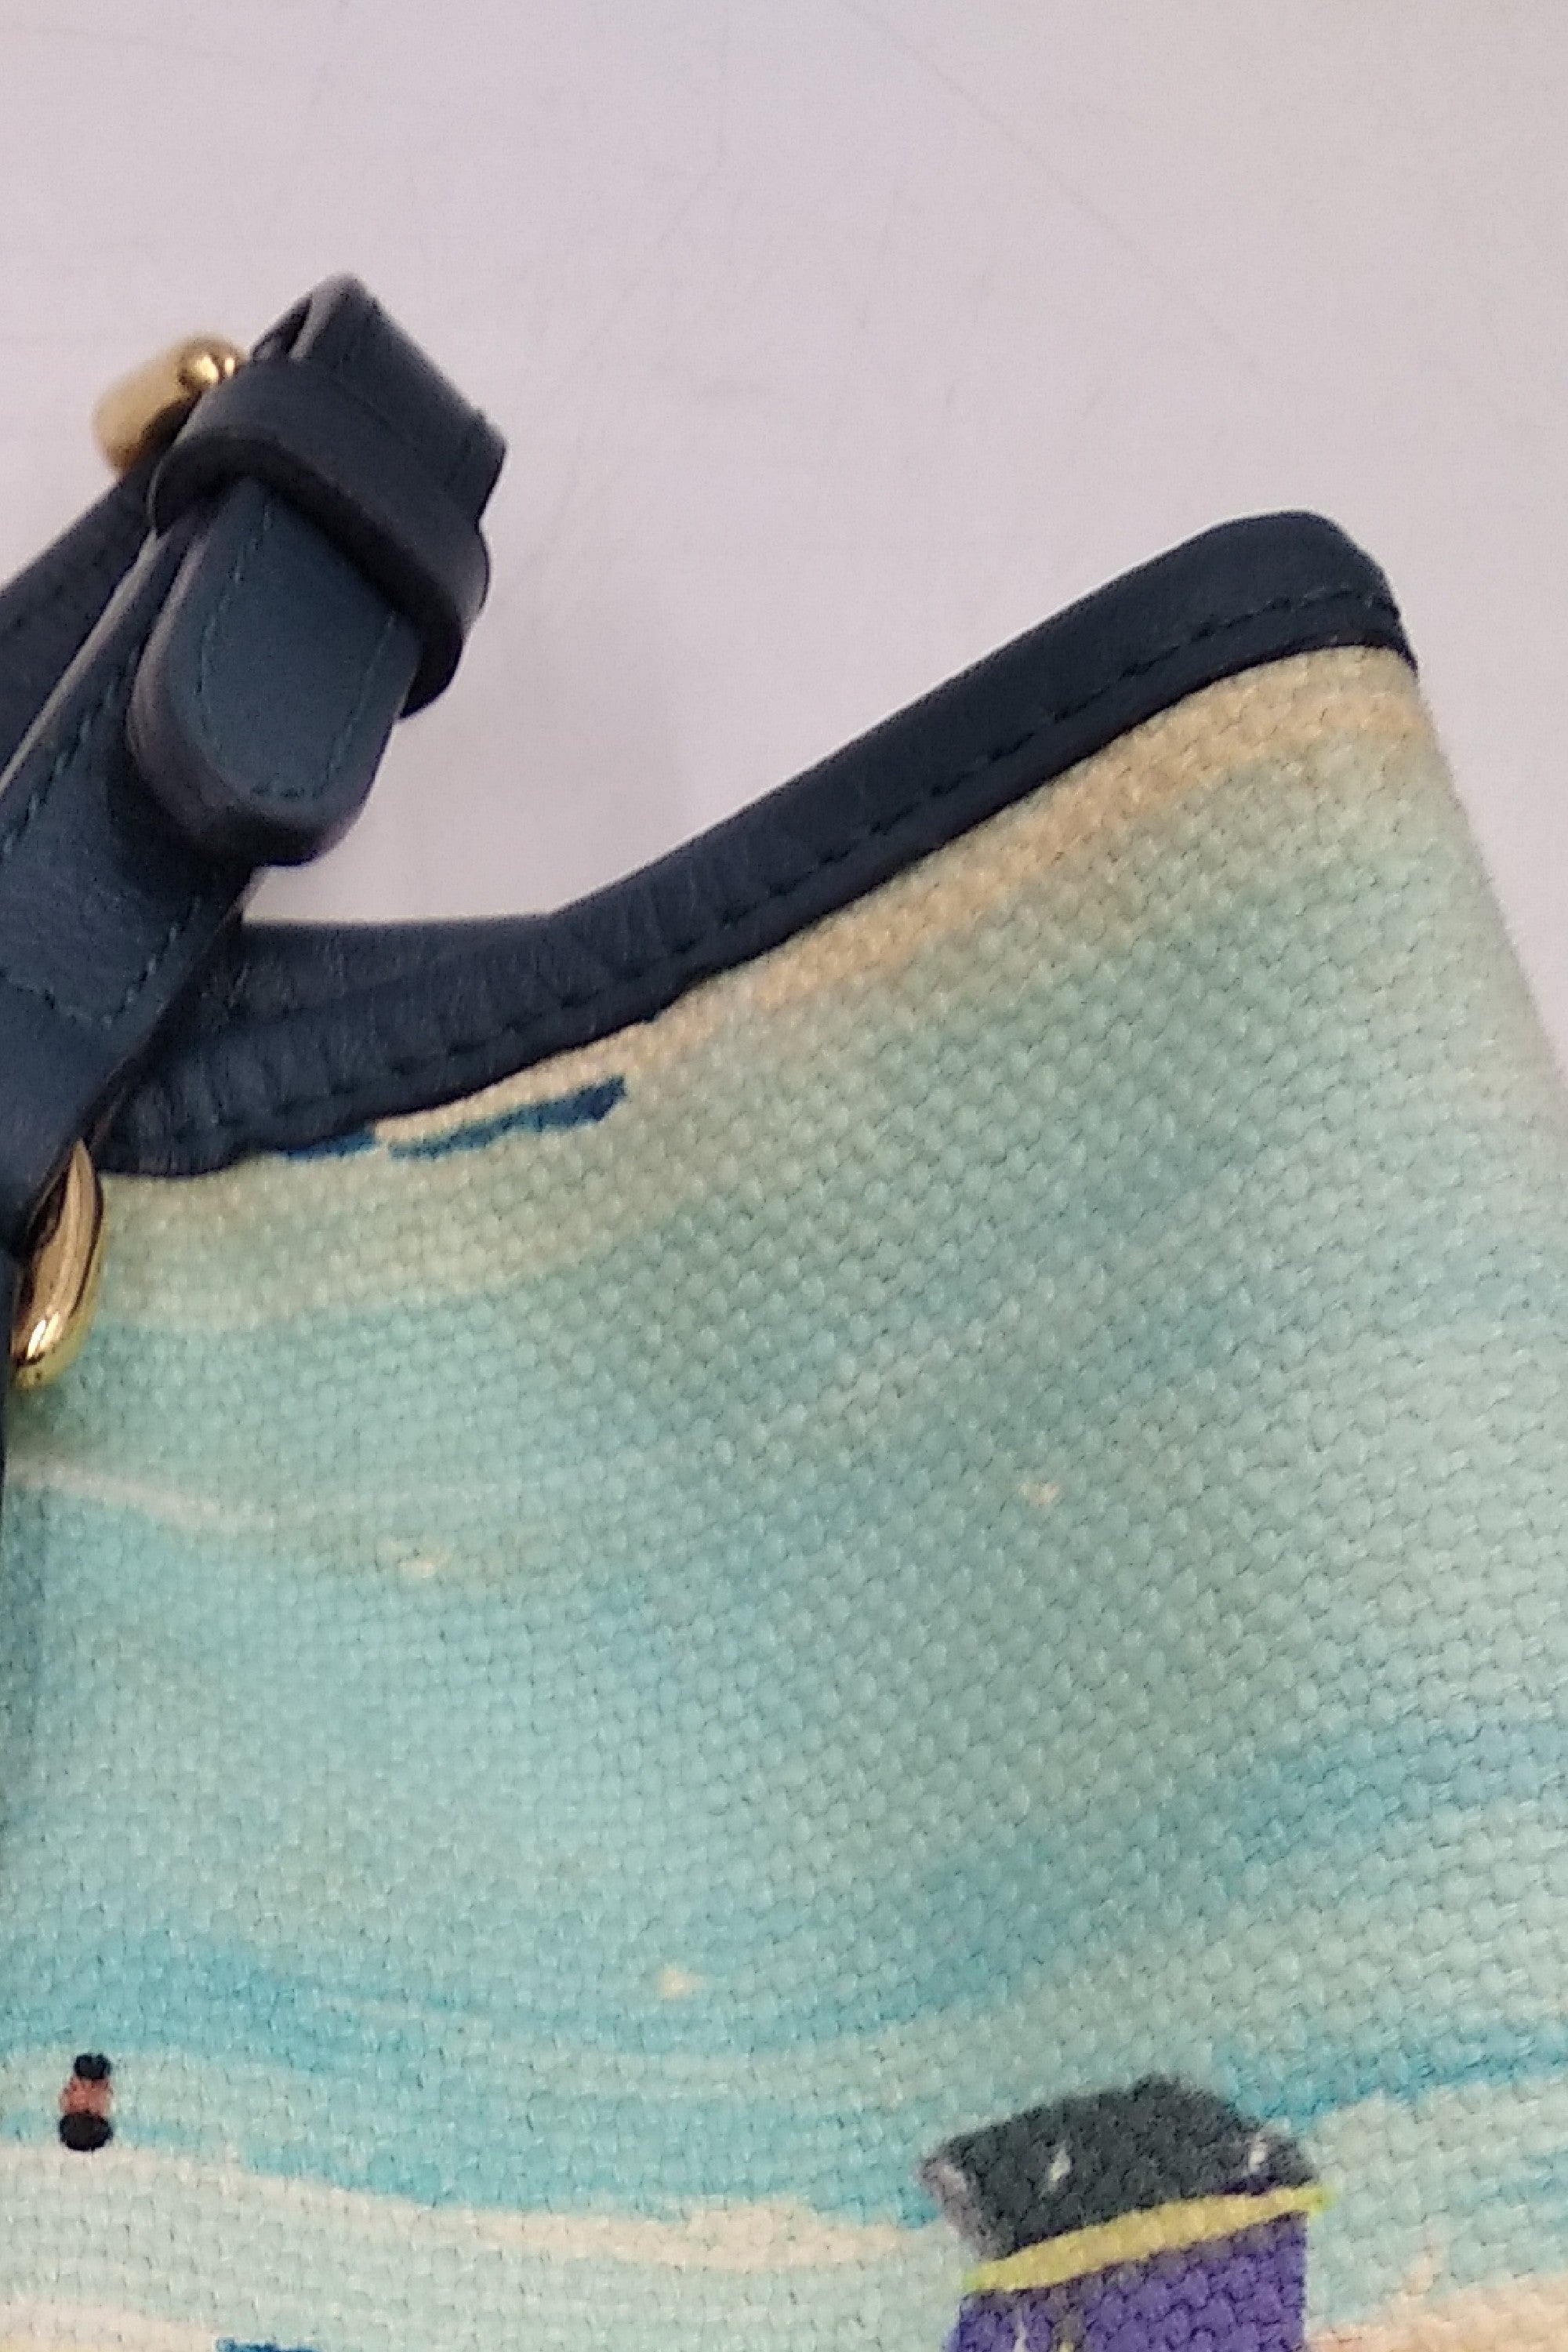 Louis Vuitton Cabas Ailleurs Escale Pm Tote 866948 Blue Canvas Shoulder Bag